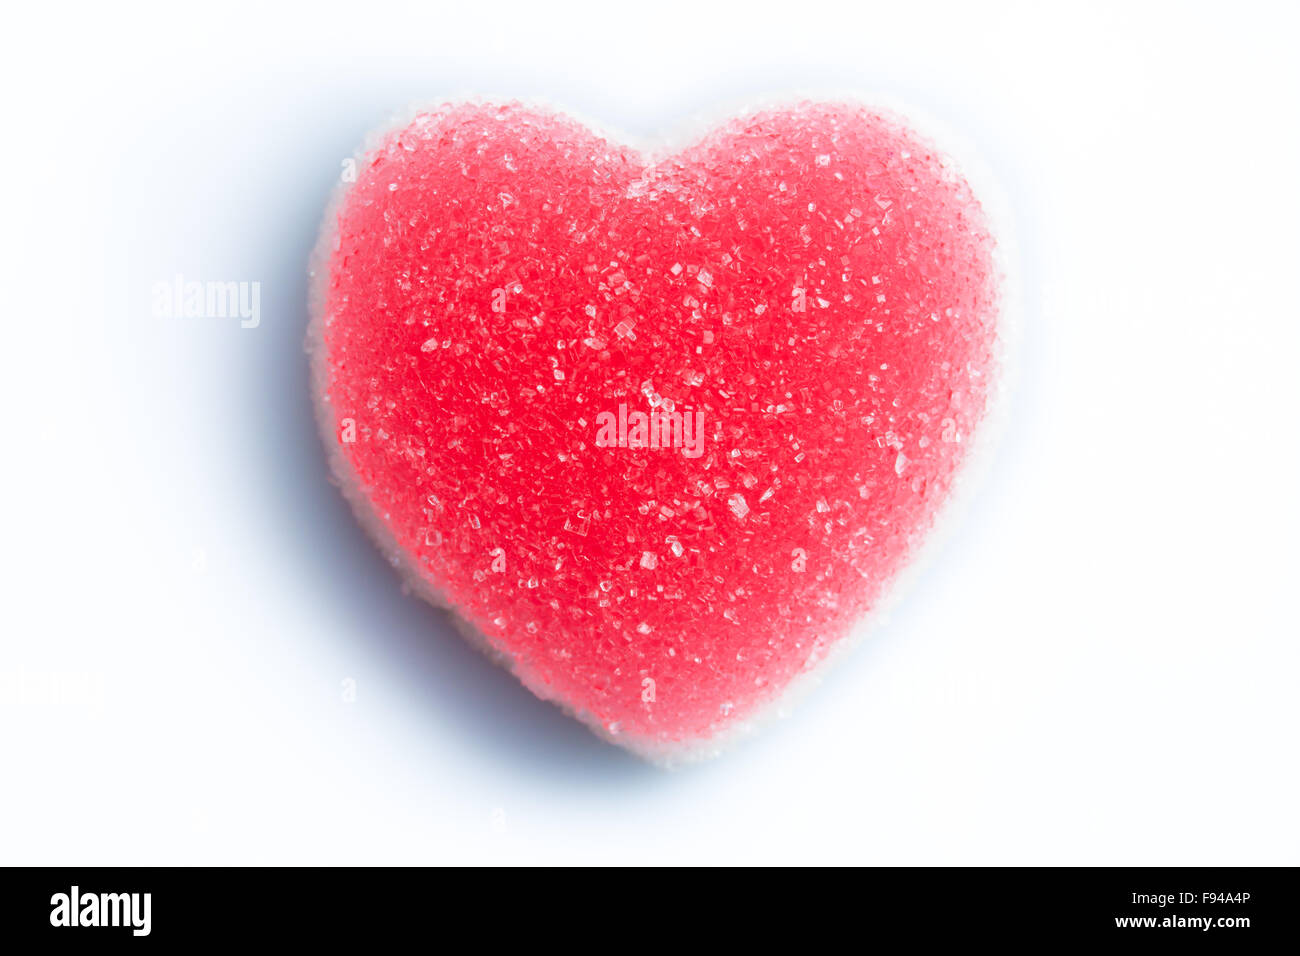 Zucchero a forma di cuore candy su sfondo bianco Foto Stock